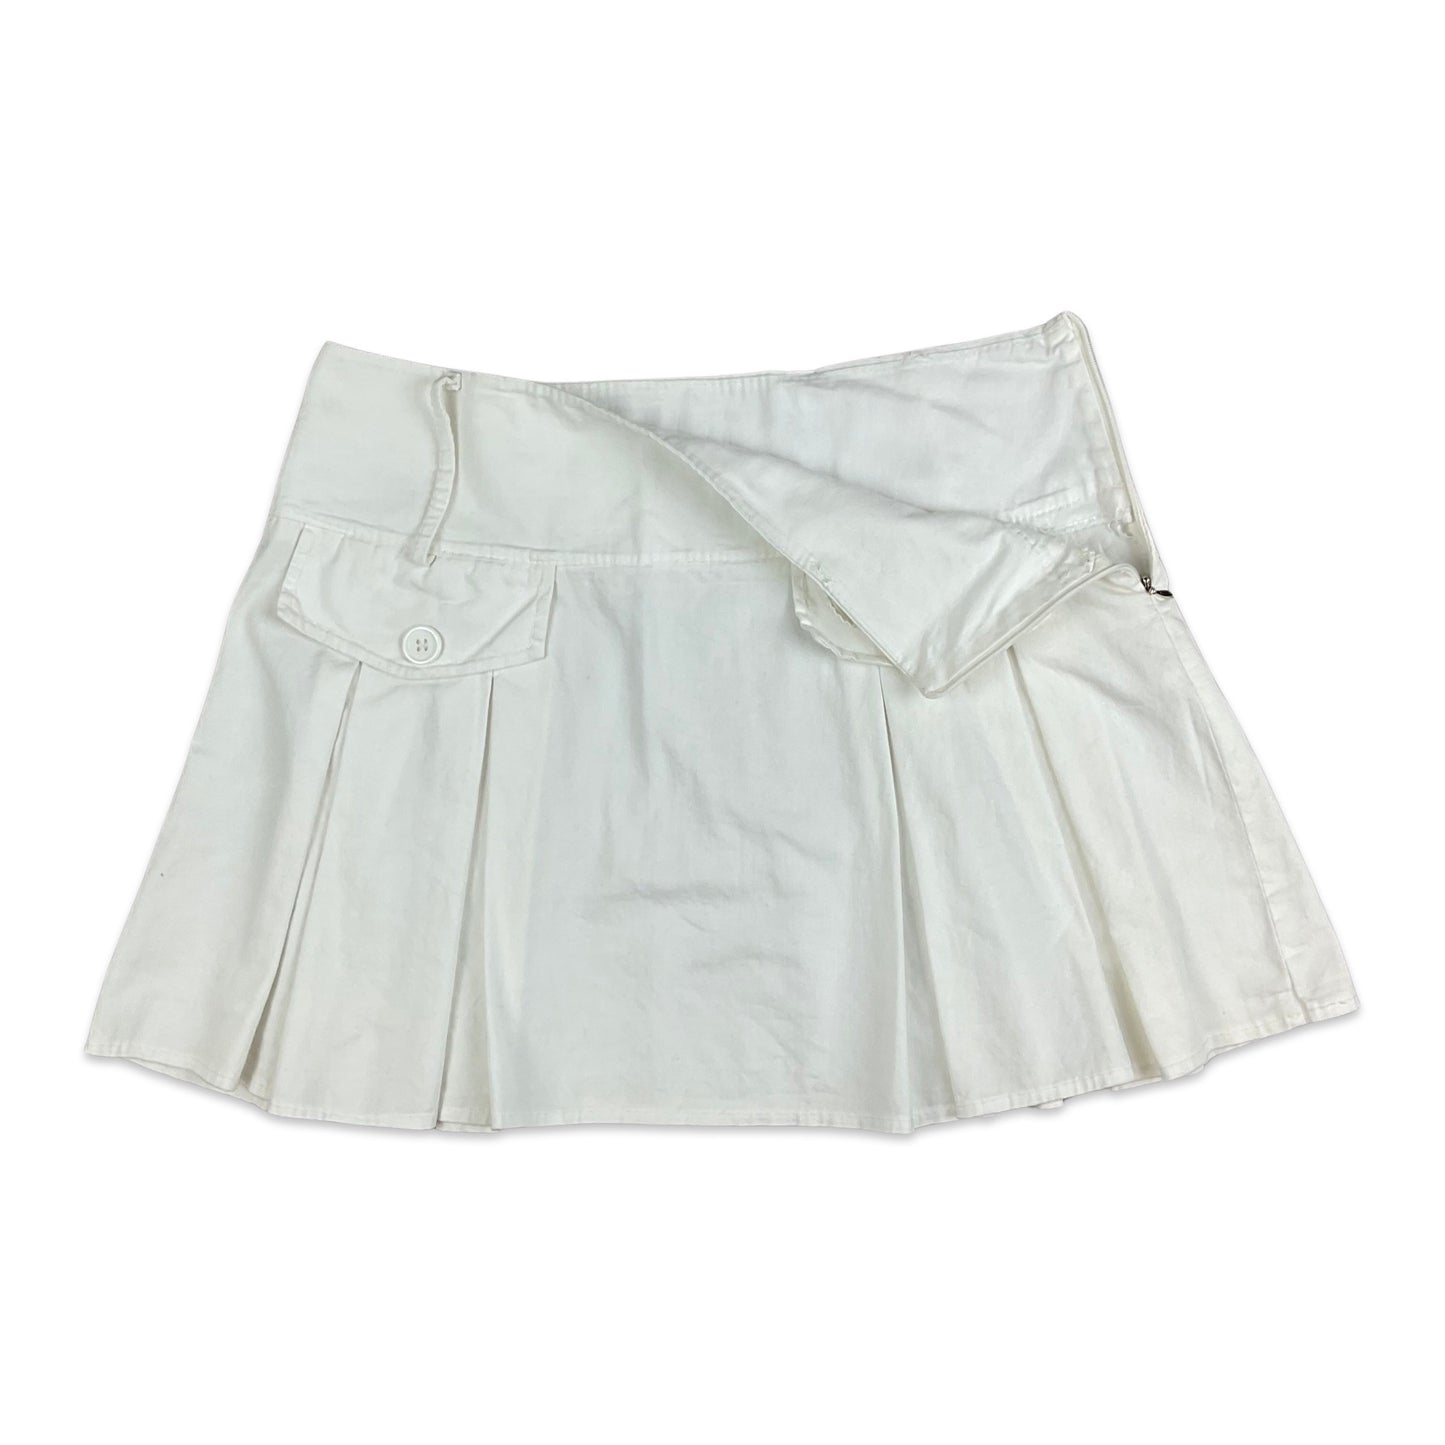 Vintage 90s White Pleated Mini Skirt 12 14